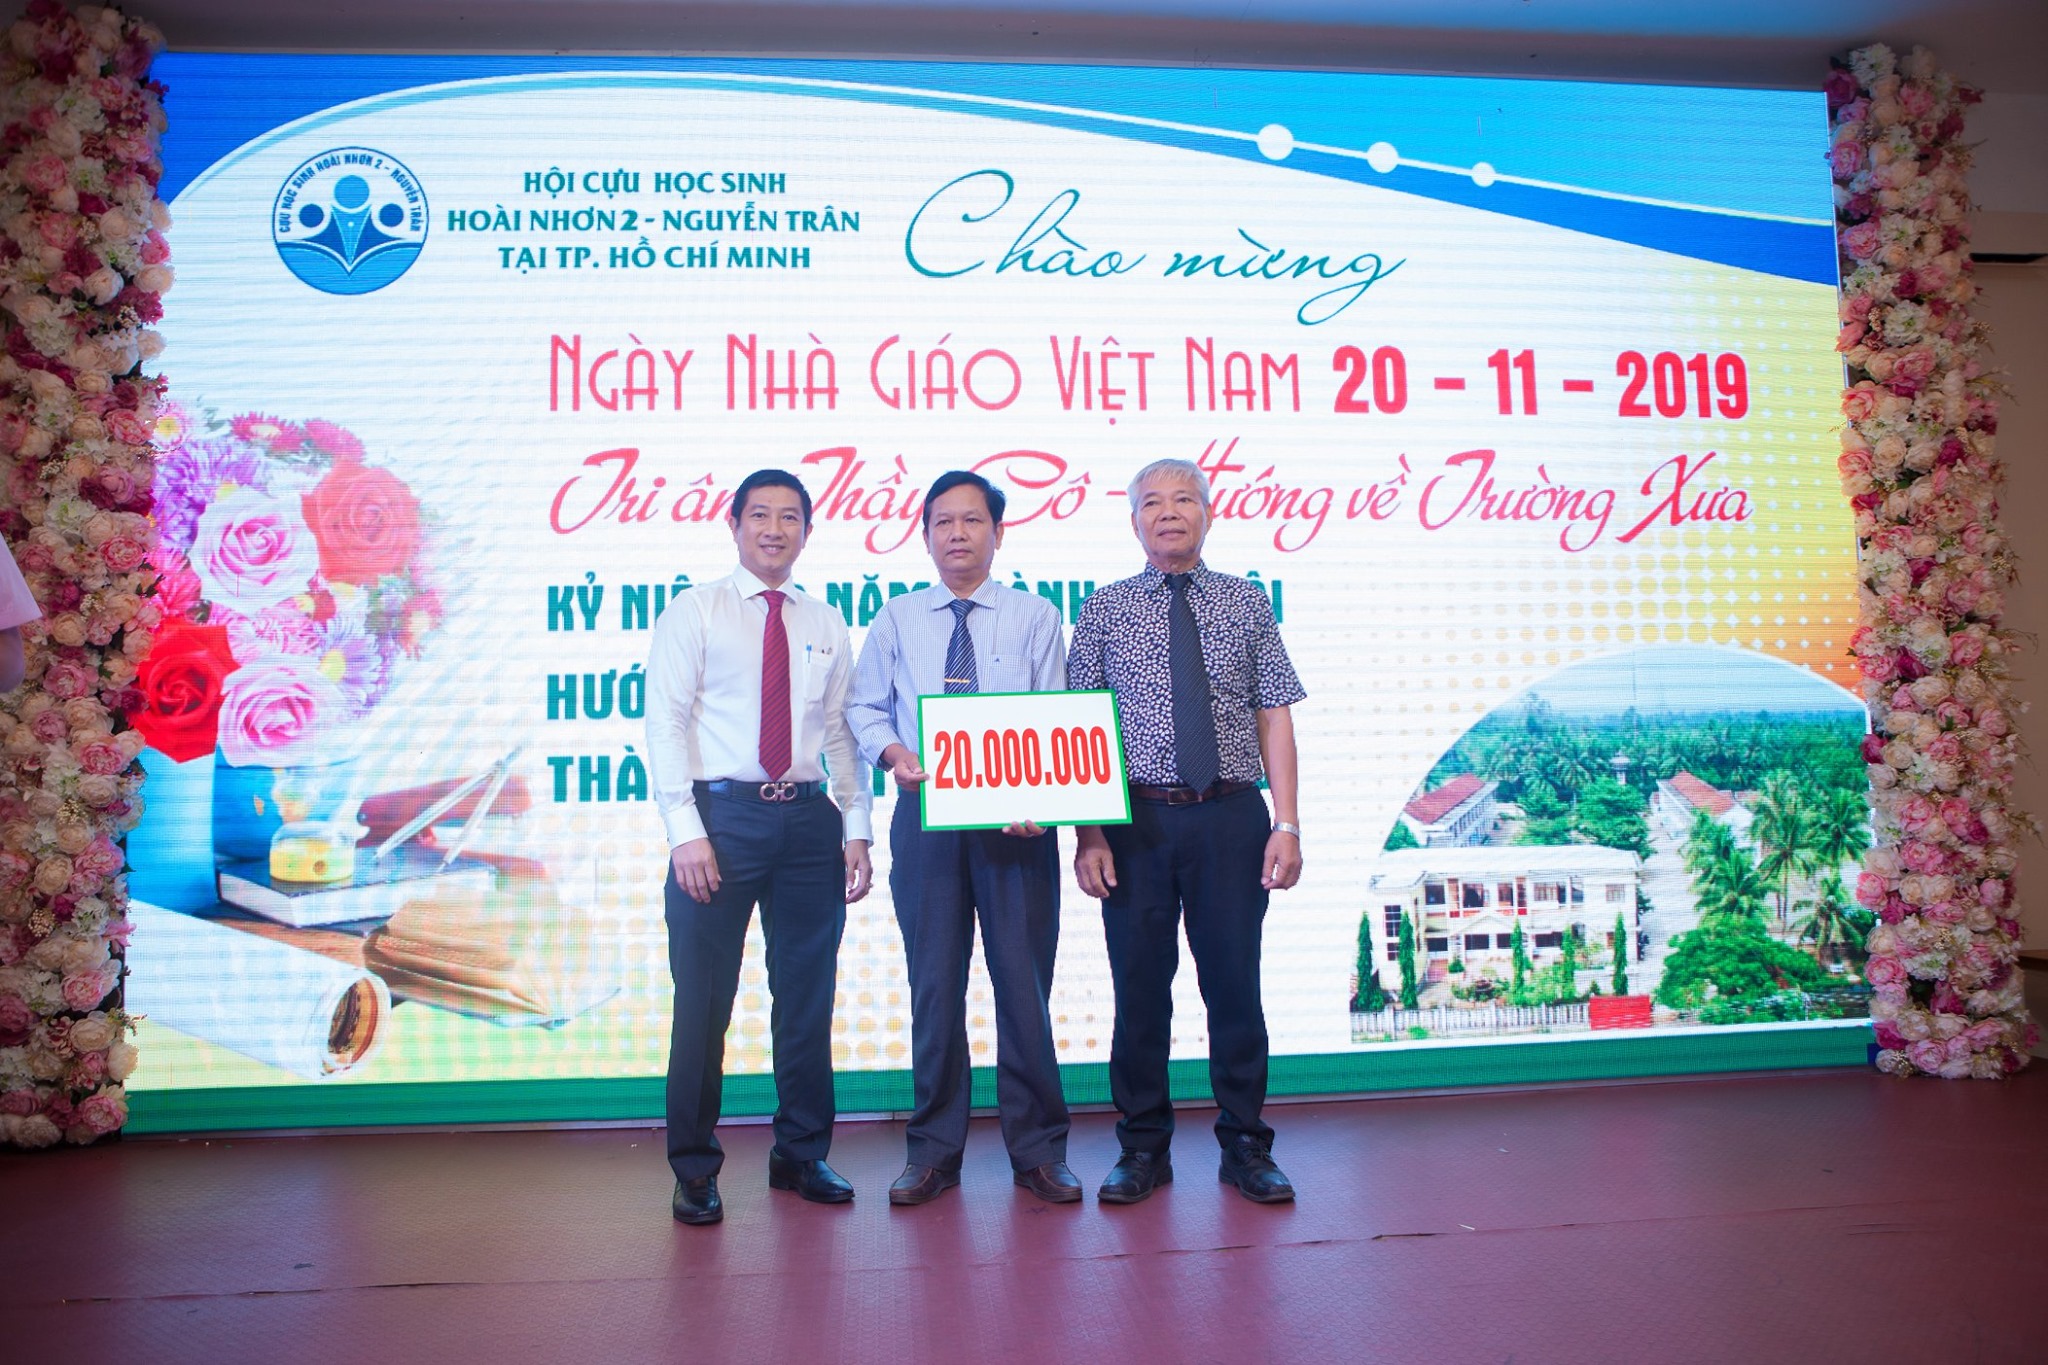 Trao tặng quỹ học bổng trường THPT Nguyễn Trân 20.000.000